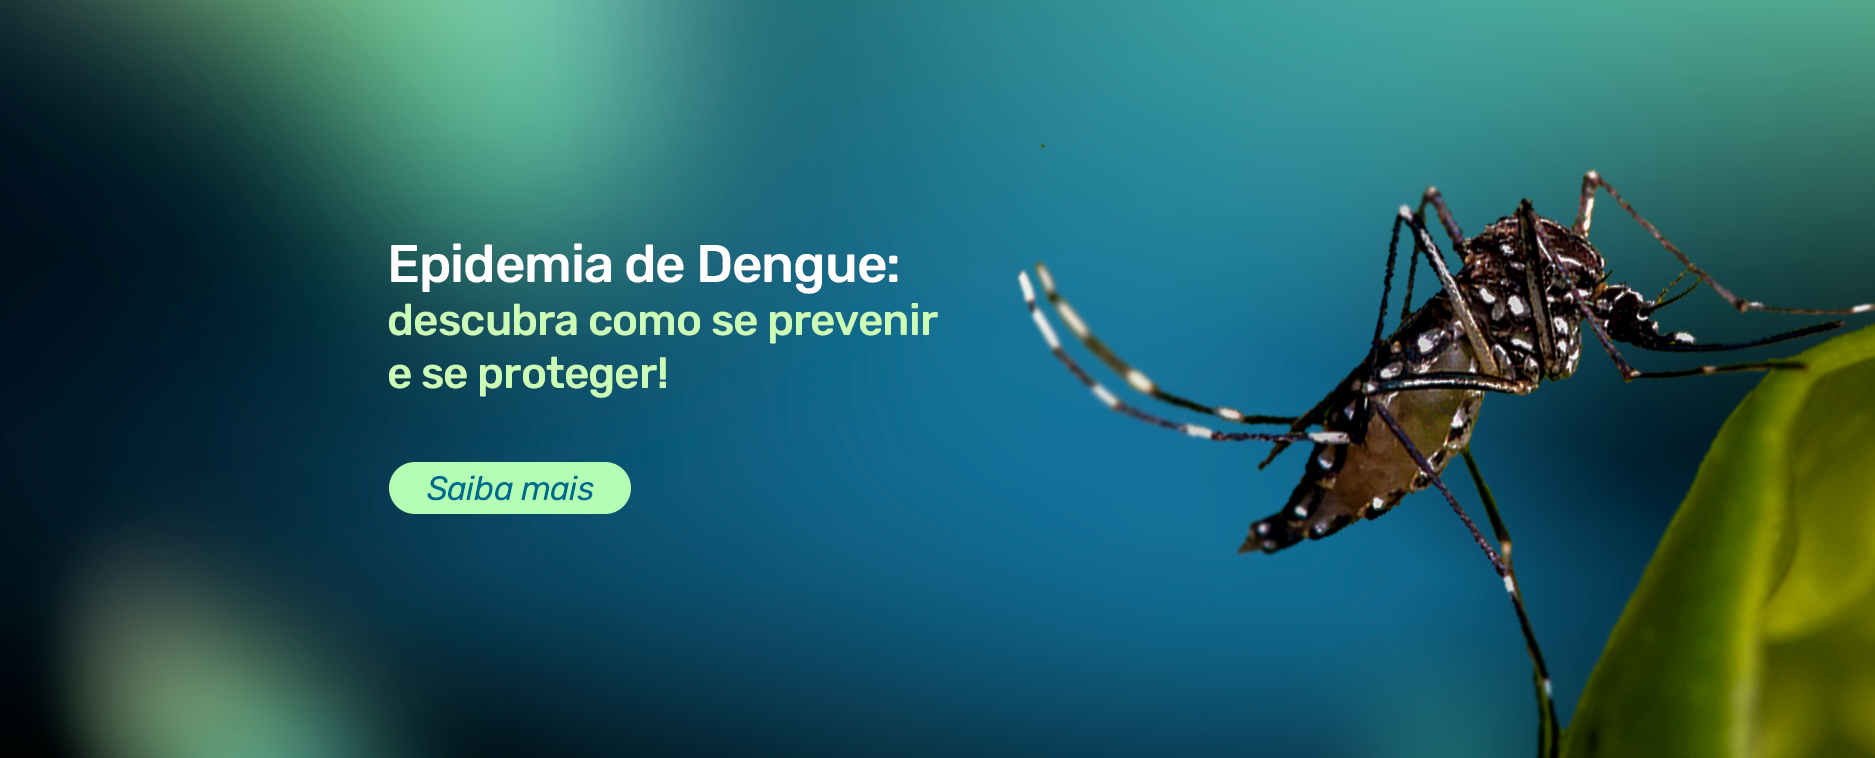 Epidemia de Dengue: descubra como se prevenir e se proteger